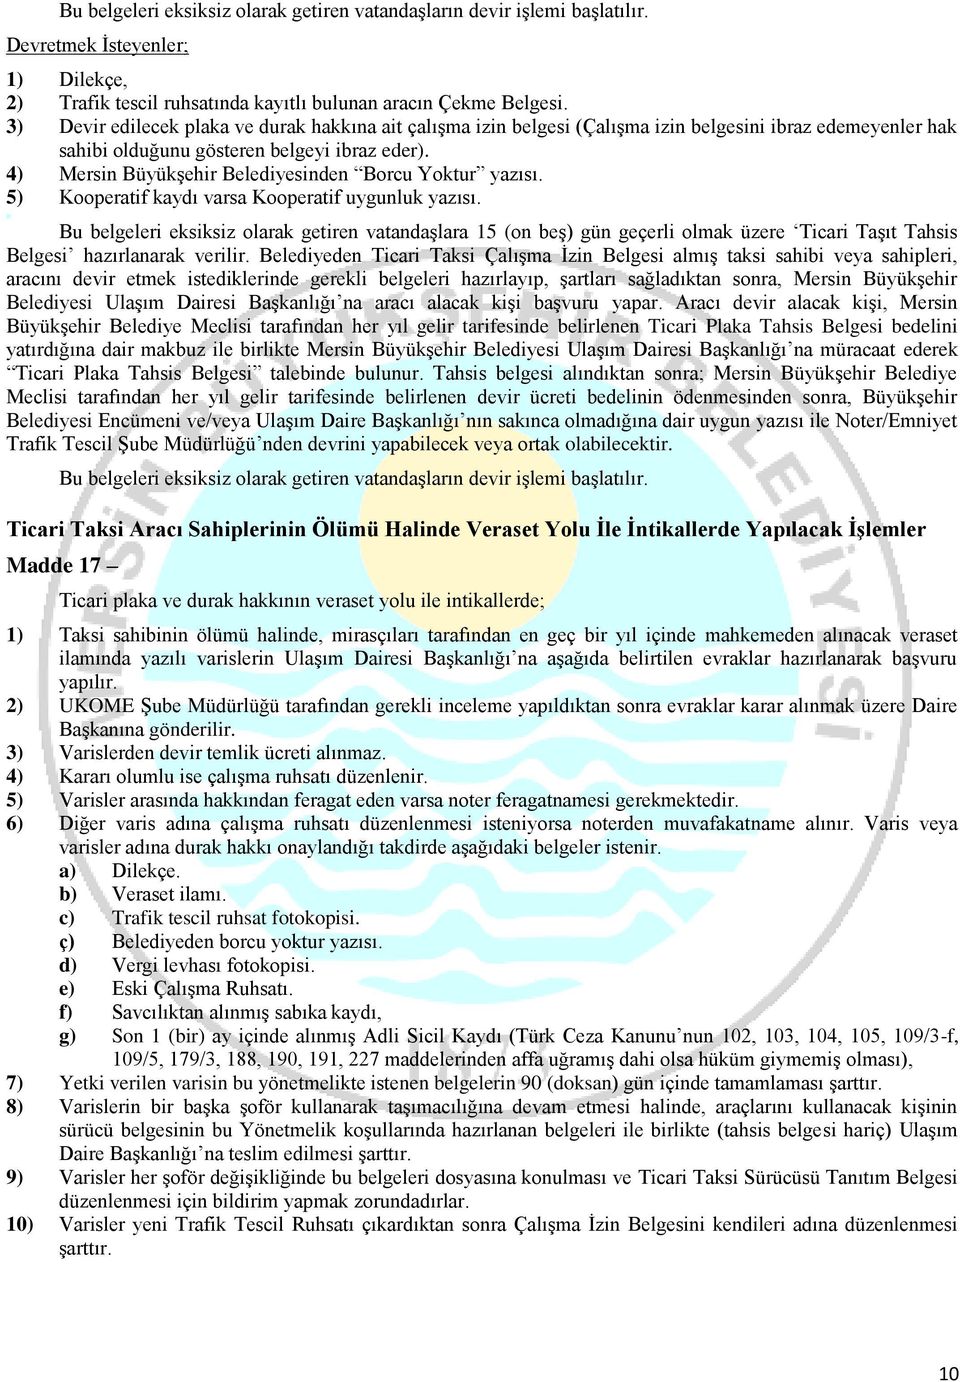 4) Mersin Büyükşehir Belediyesinden Borcu Yoktur yazısı. 5) Kooperatif kaydı varsa Kooperatif uygunluk yazısı.